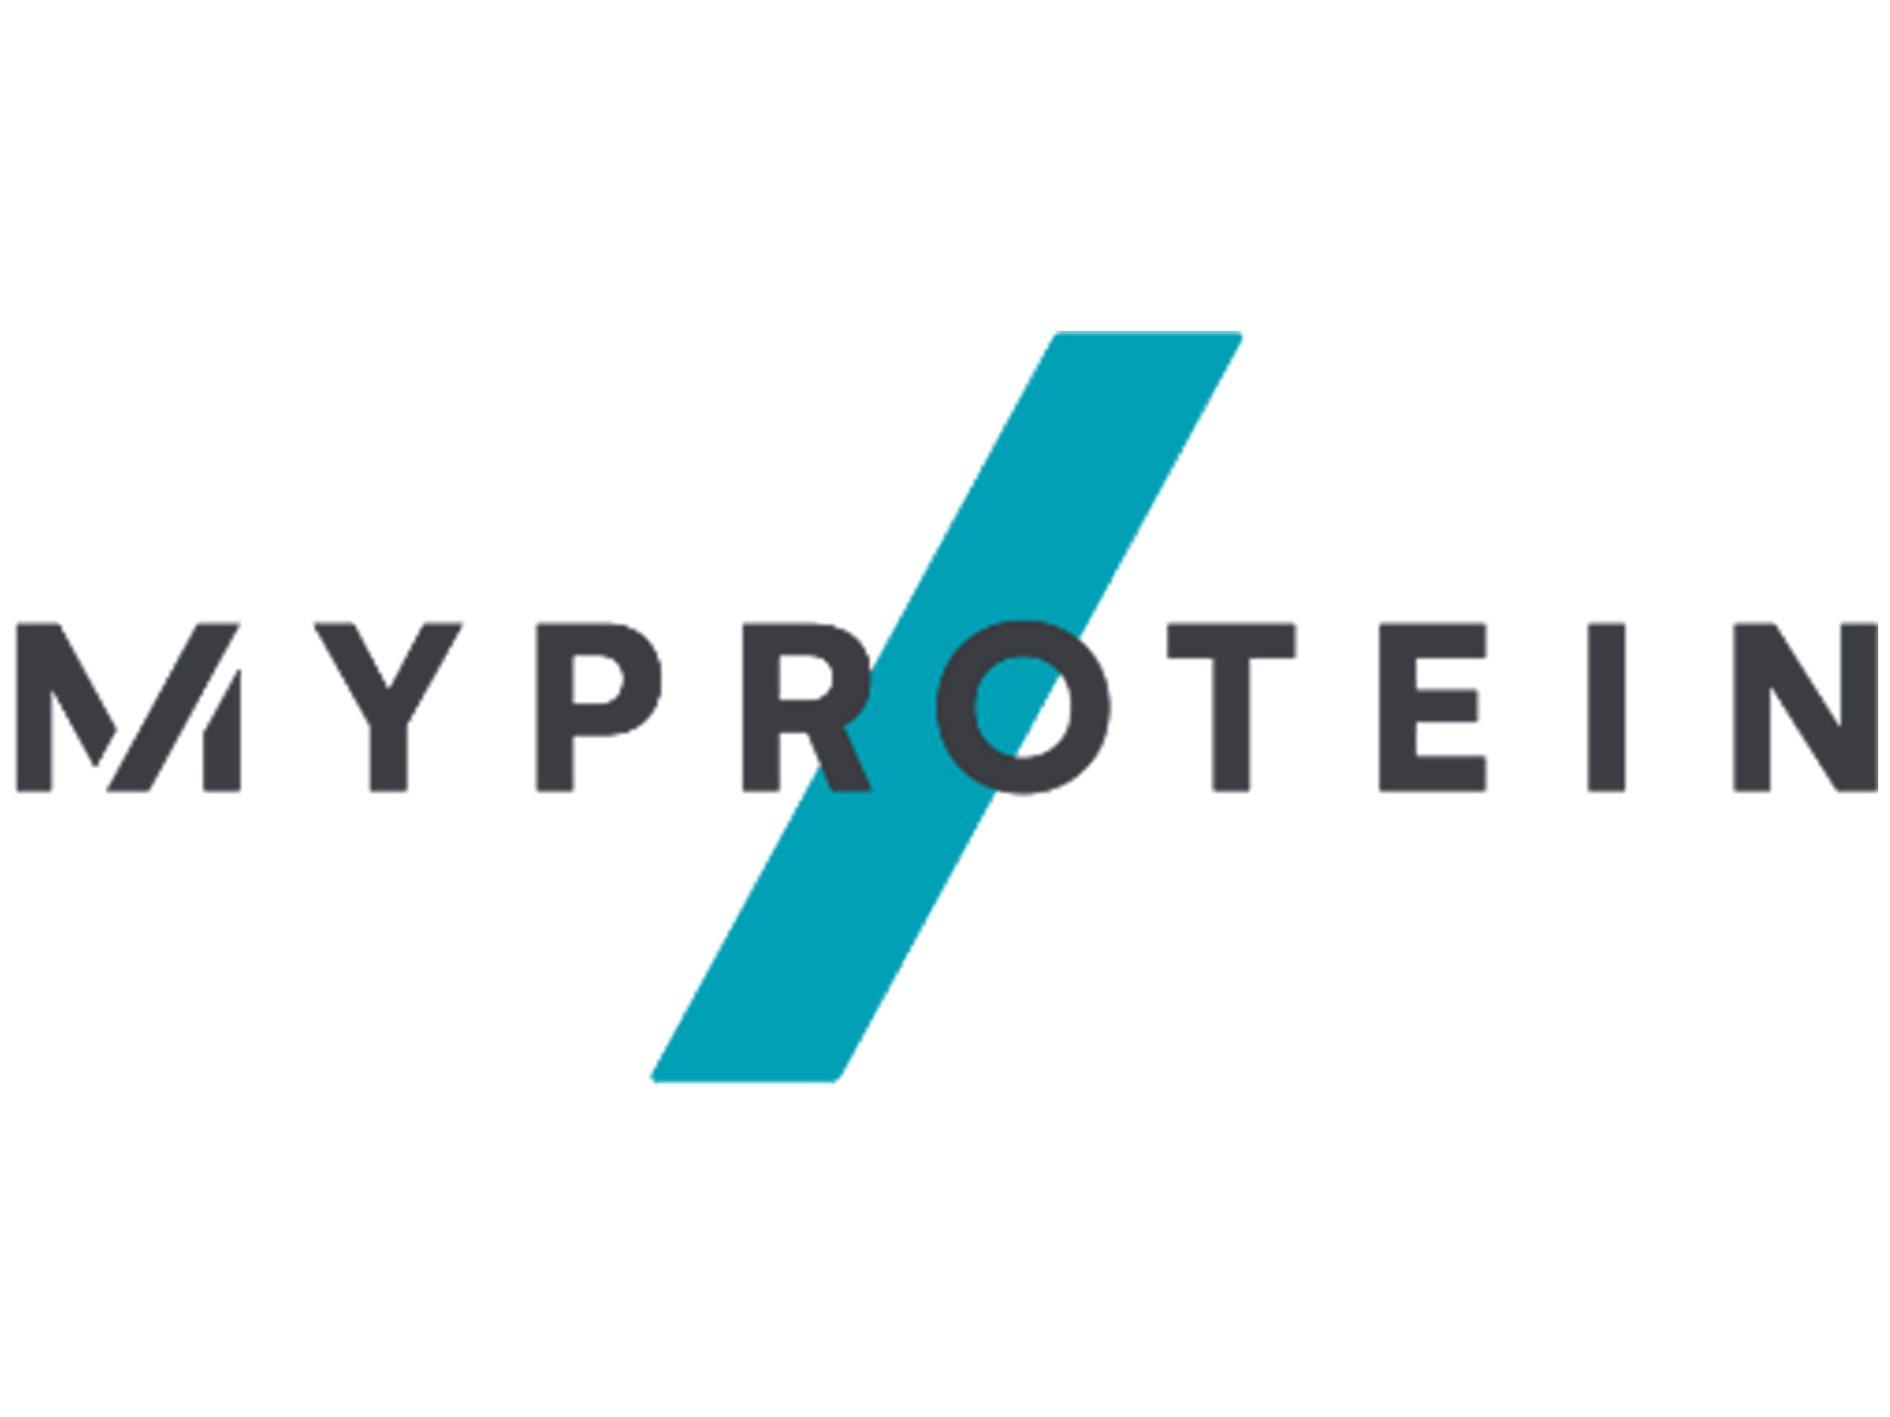 Logo of MyProtein